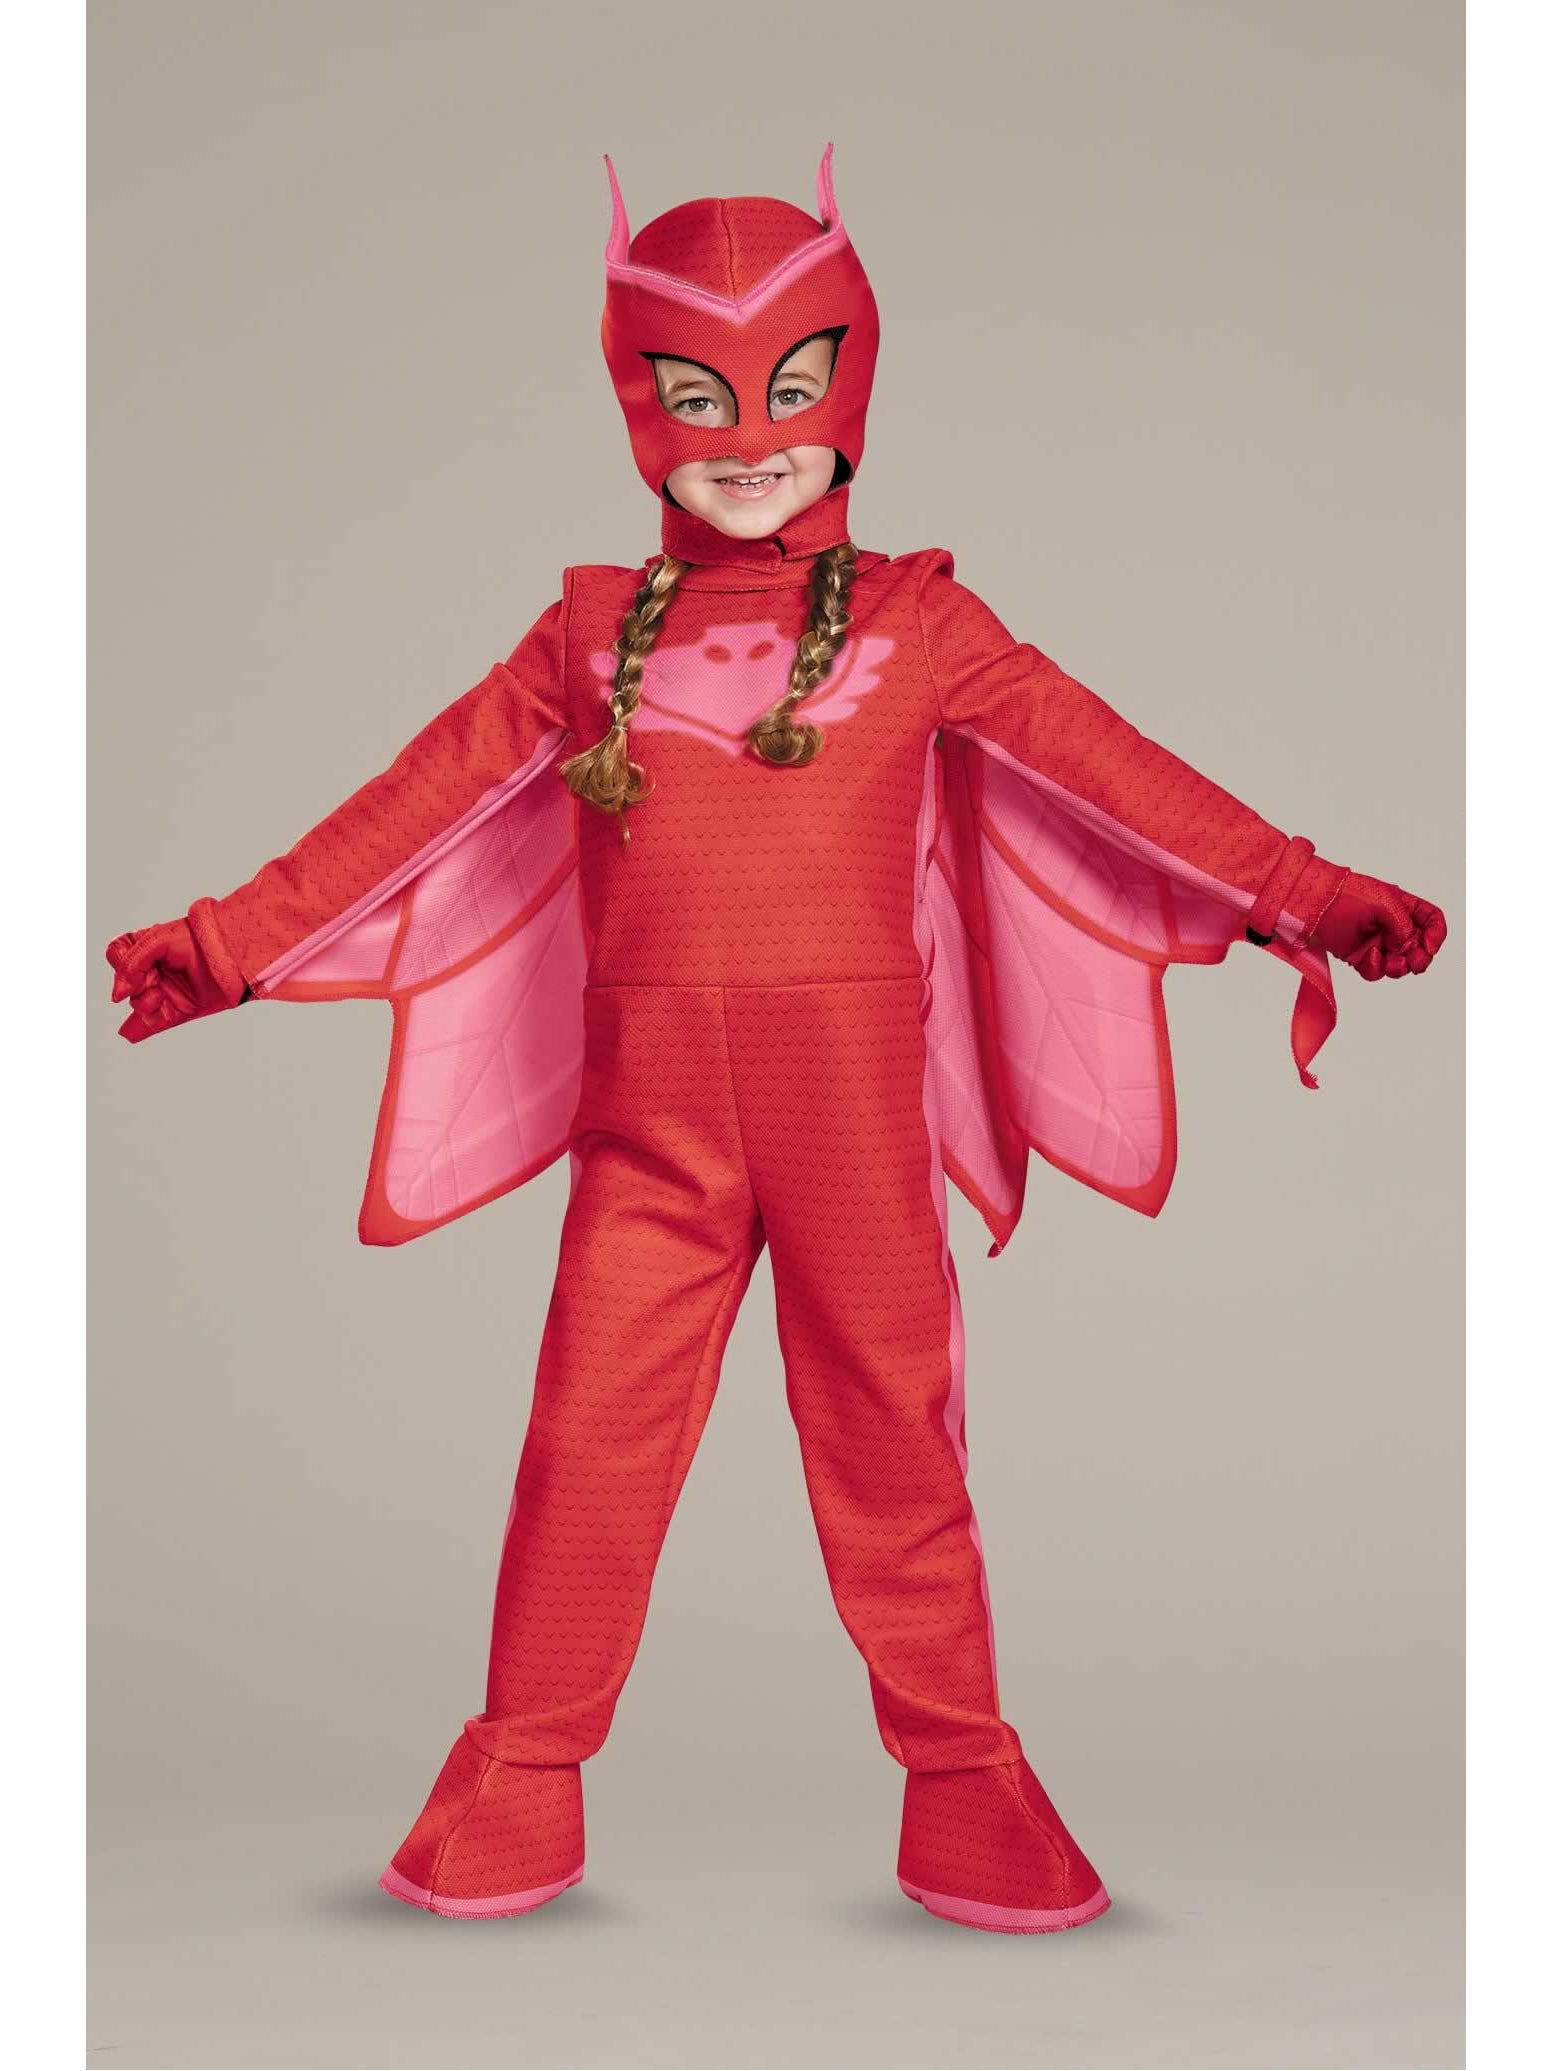 PJ Masks Owlette Costume for Kids - Chasing Fireflies